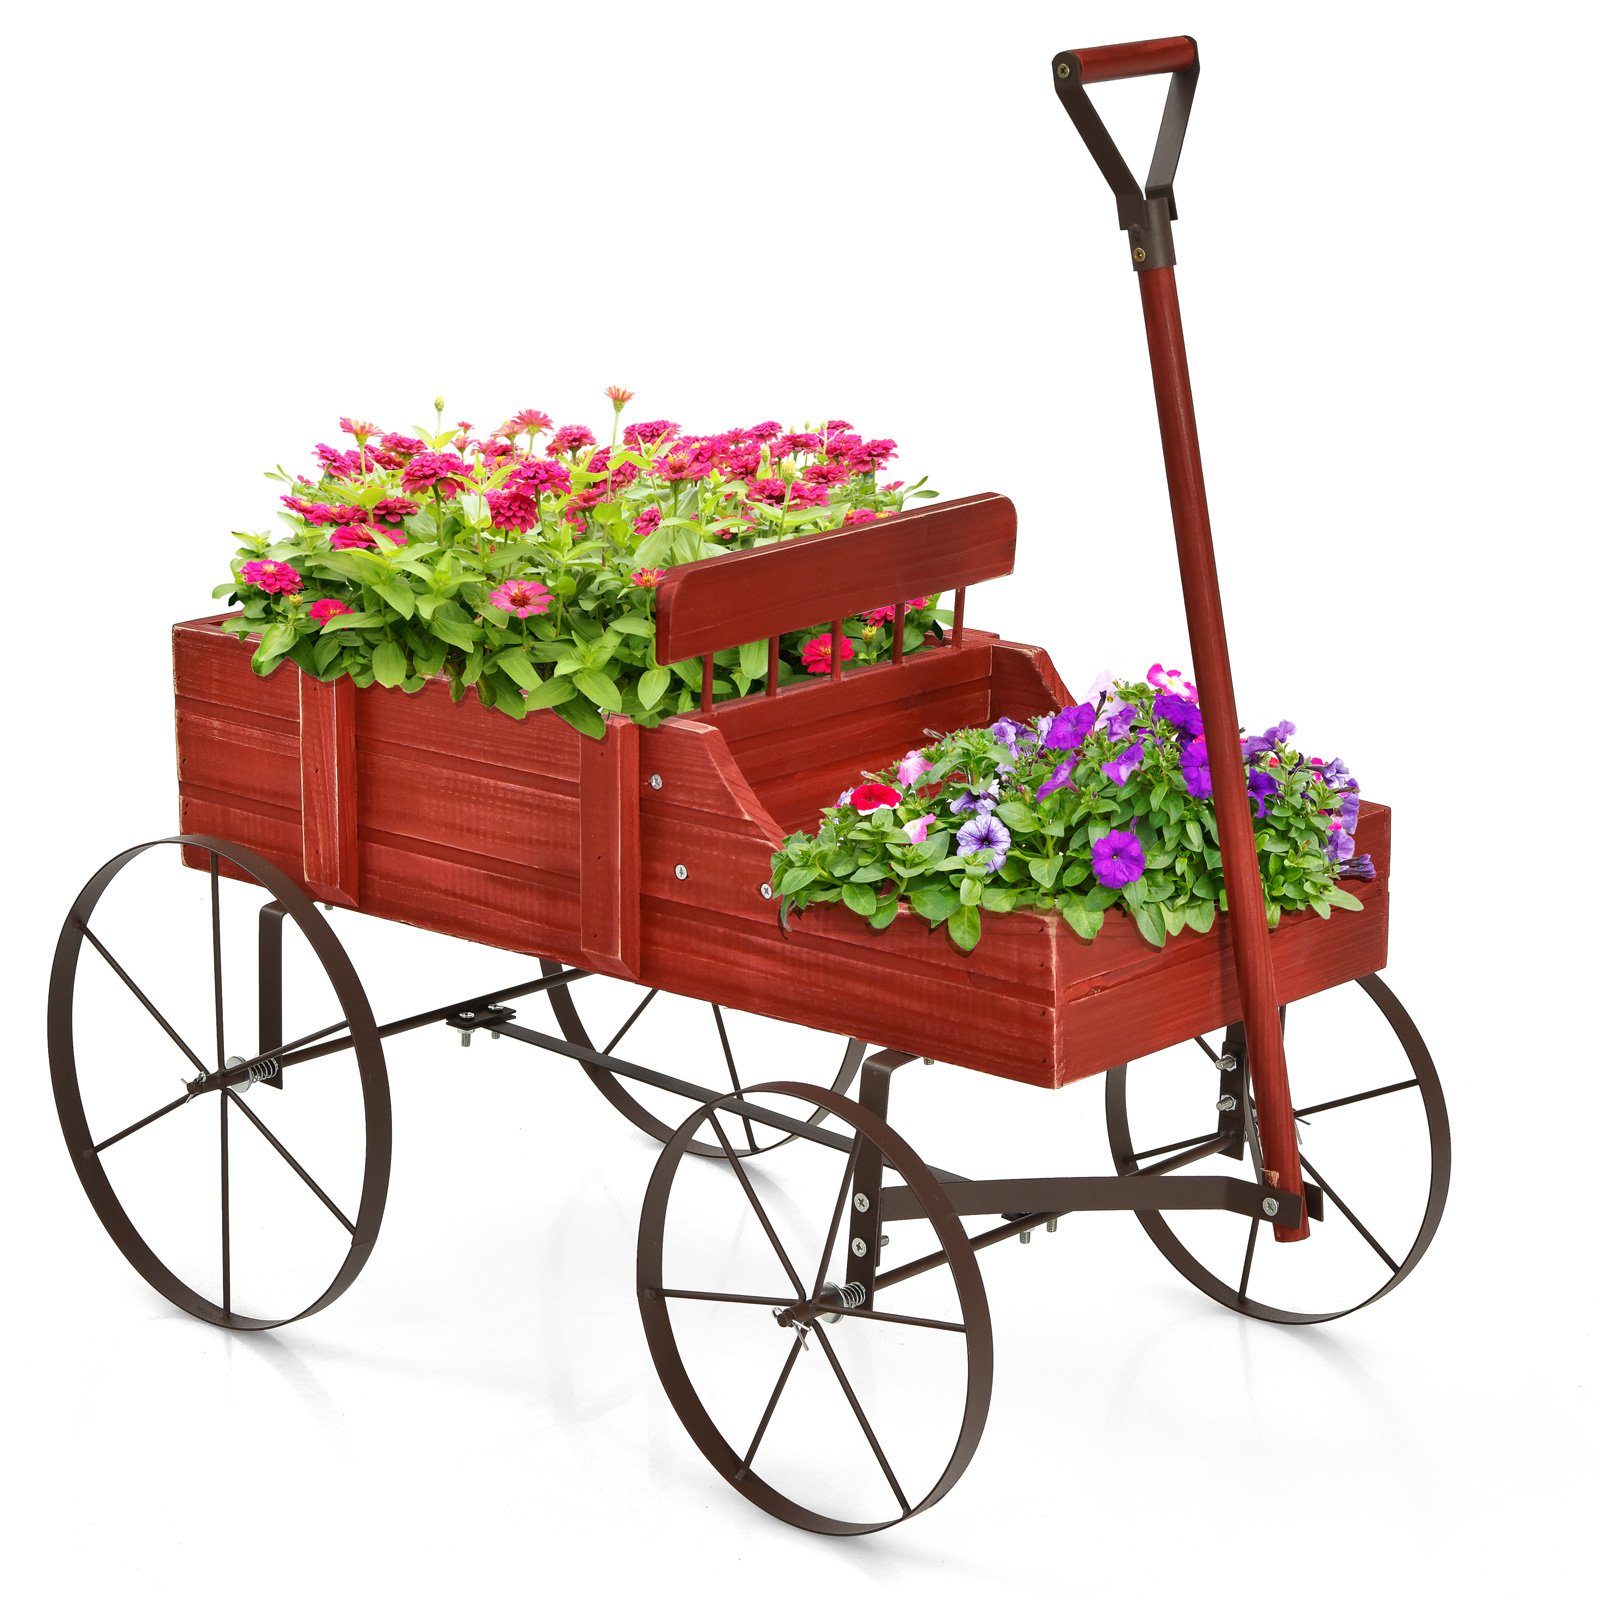 COSTWAY Blumenständer, Pflanzwagen mit 4 Metallrädern & Griff, 62x34x60cm